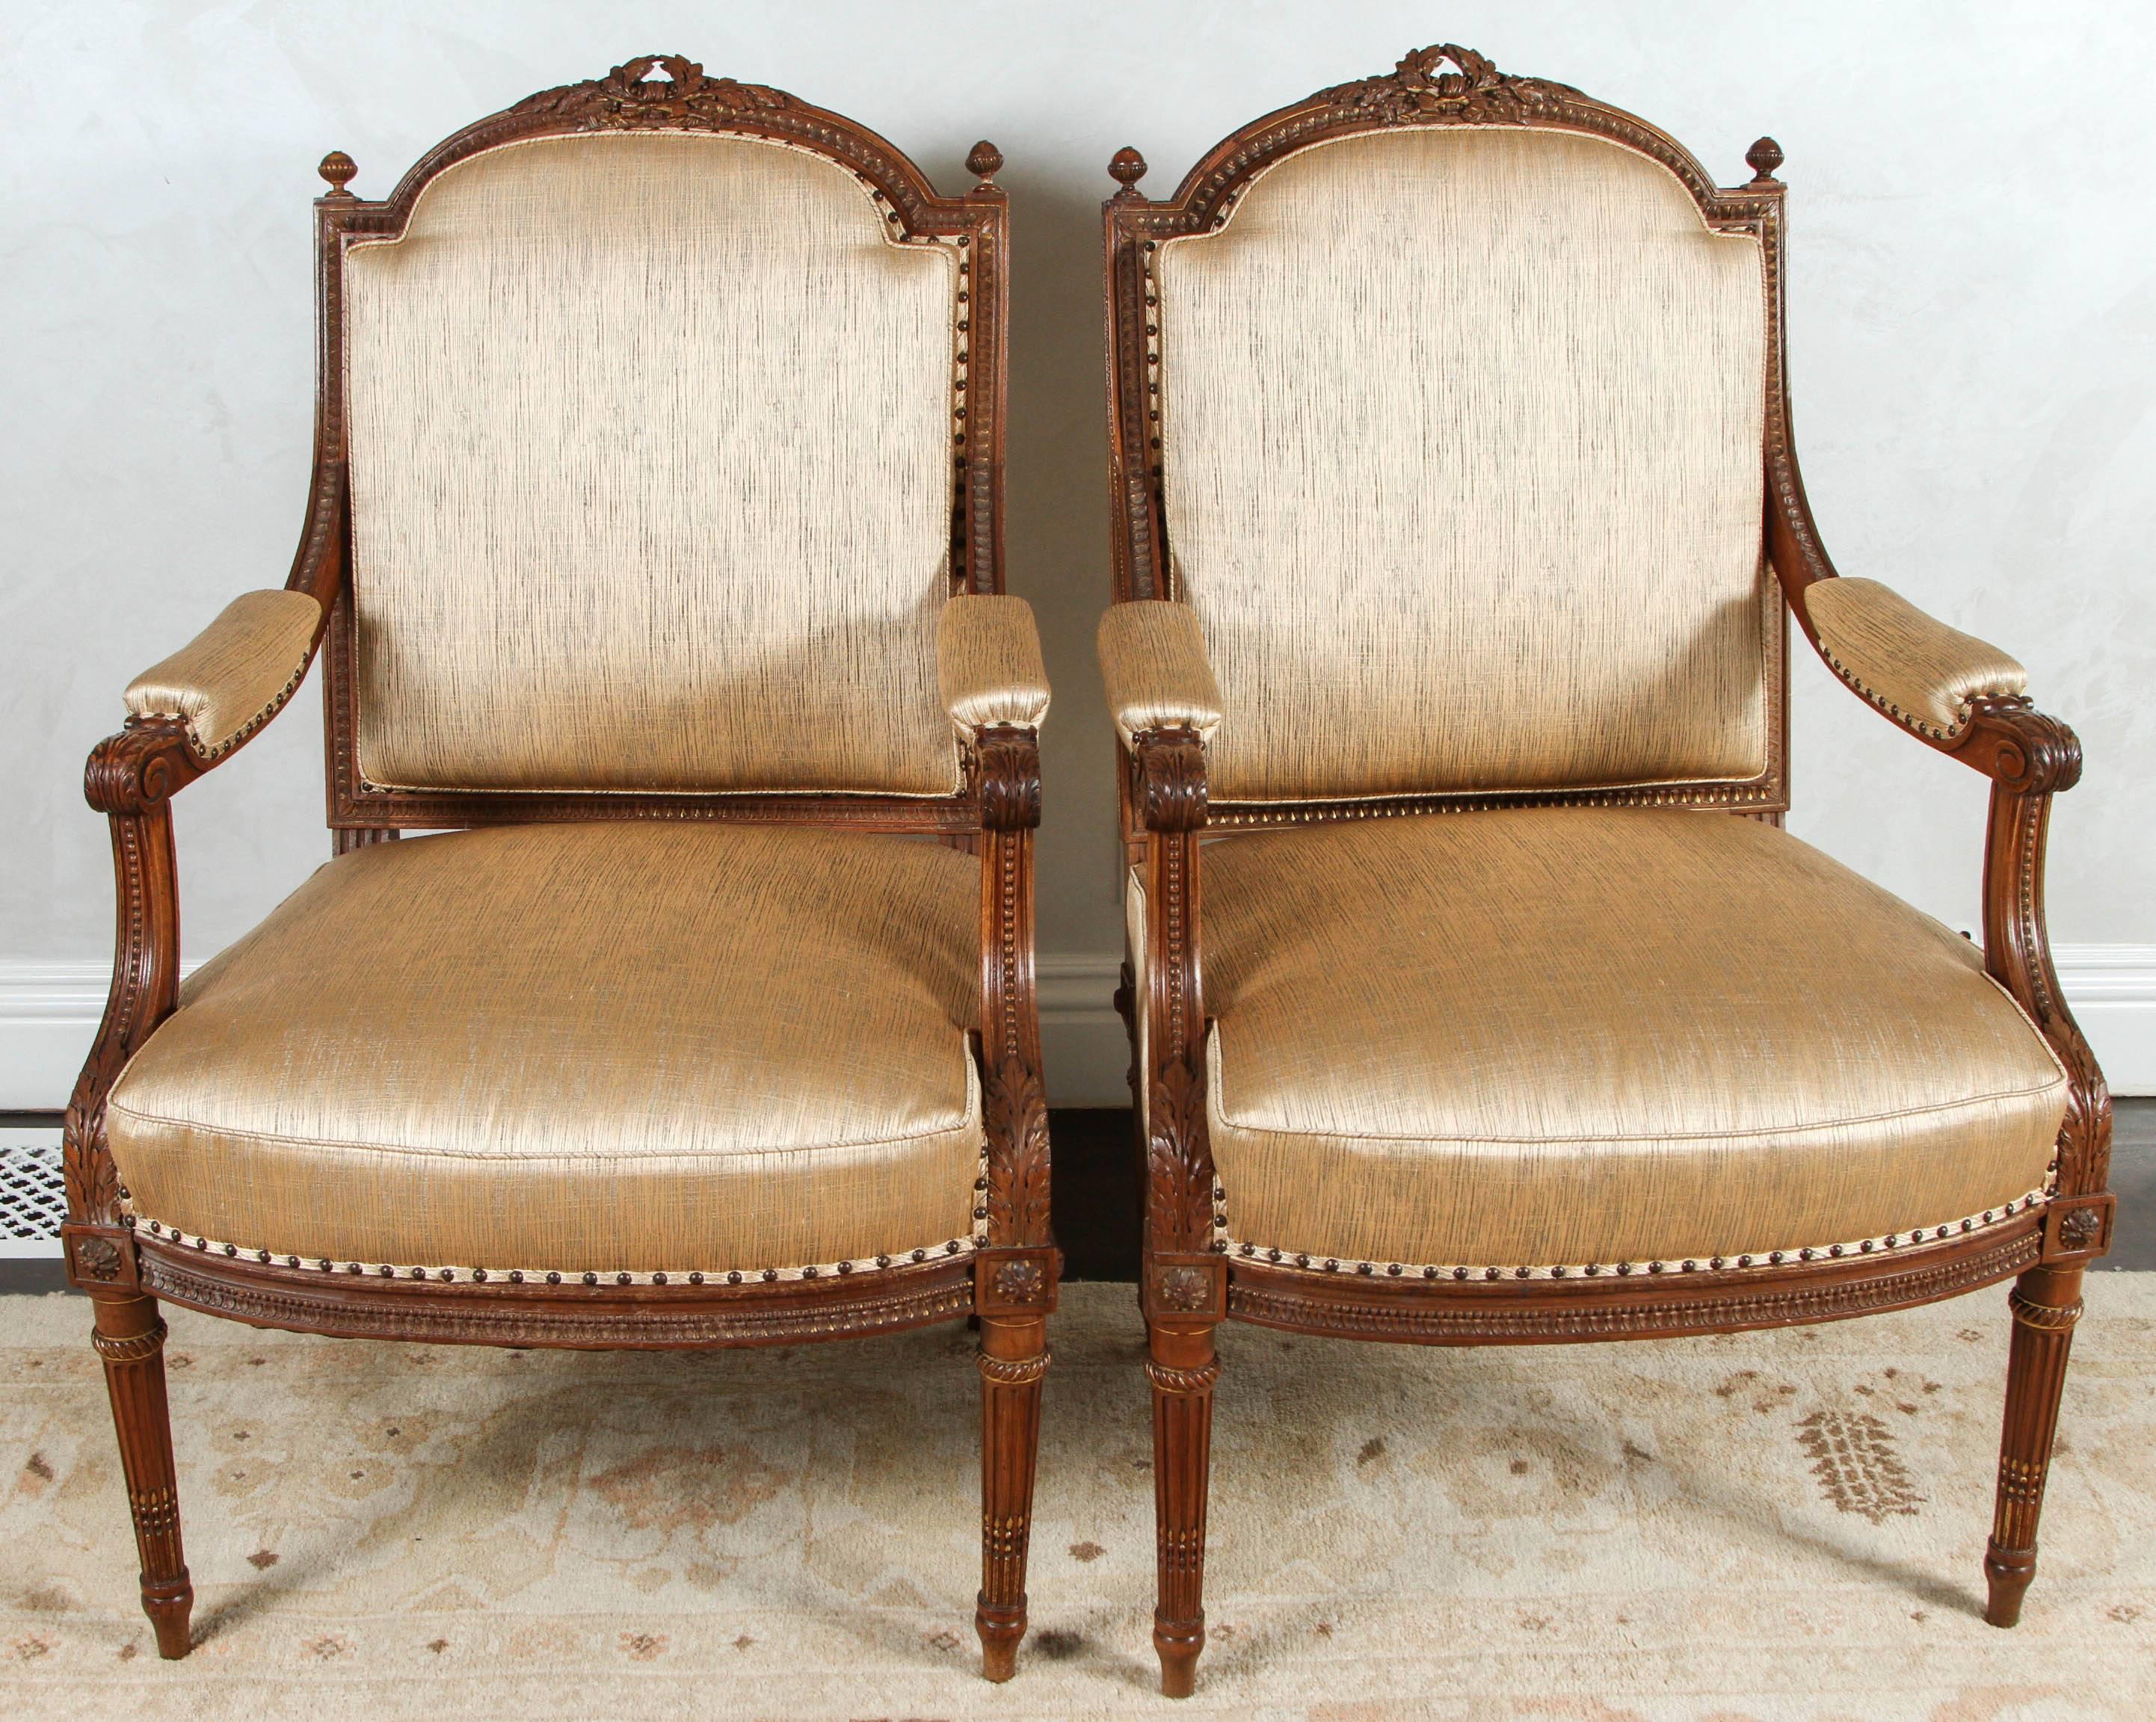 Paire de fauteuils français du XIXe siècle en noyer finement sculpté avec des motifs de feuilles d'acanthe et de rubans. Les chaises sont finies avec des têtes de clou et ont été nouvellement tapissées de  tissu en soie or mat. Le prix indiqué dans